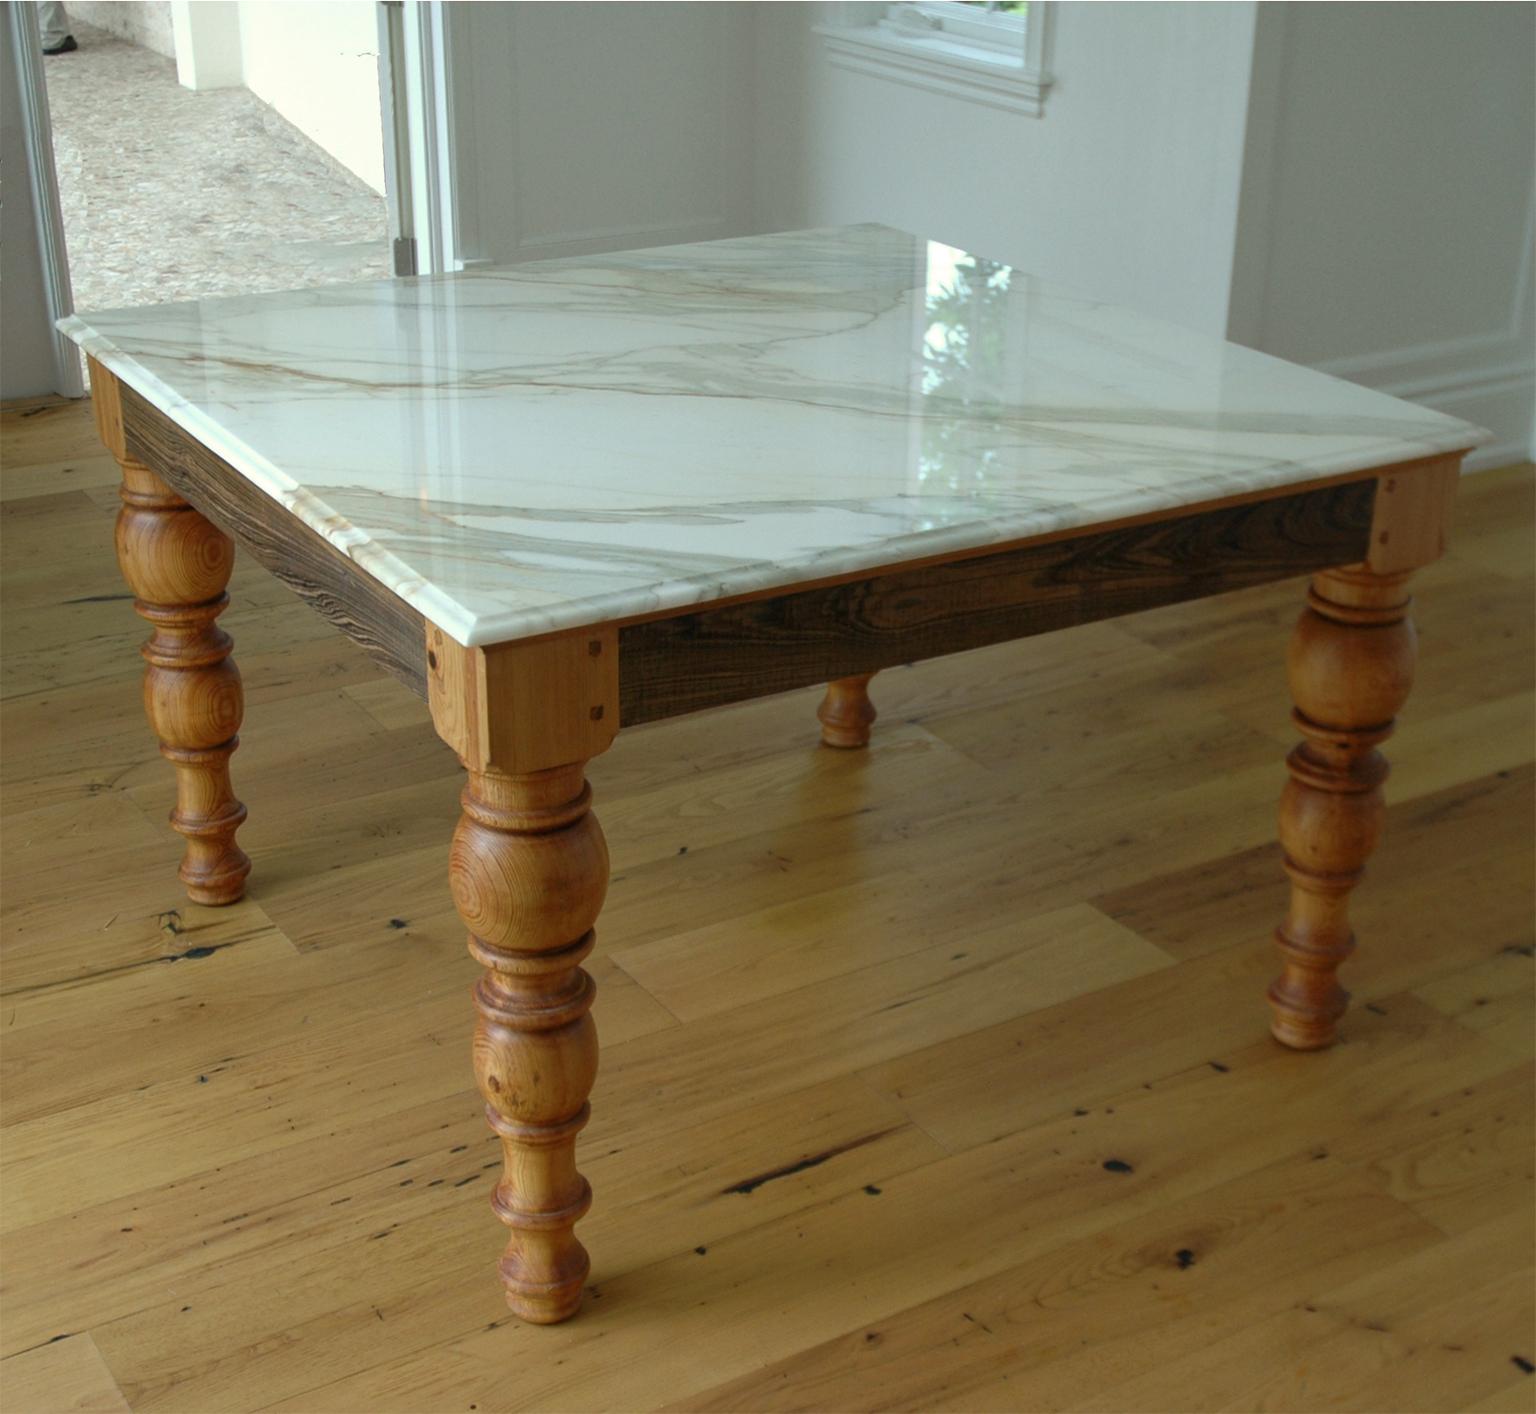 Une très belle table à manger en pin, fabriquée sur mesure dans notre atelier, avec des pieds massifs de style scandinave, tournés à partir de poutres en pin récupéré, qui soutiennent un magnifique plateau en marbre Calacatta or ou blanc de Carrare